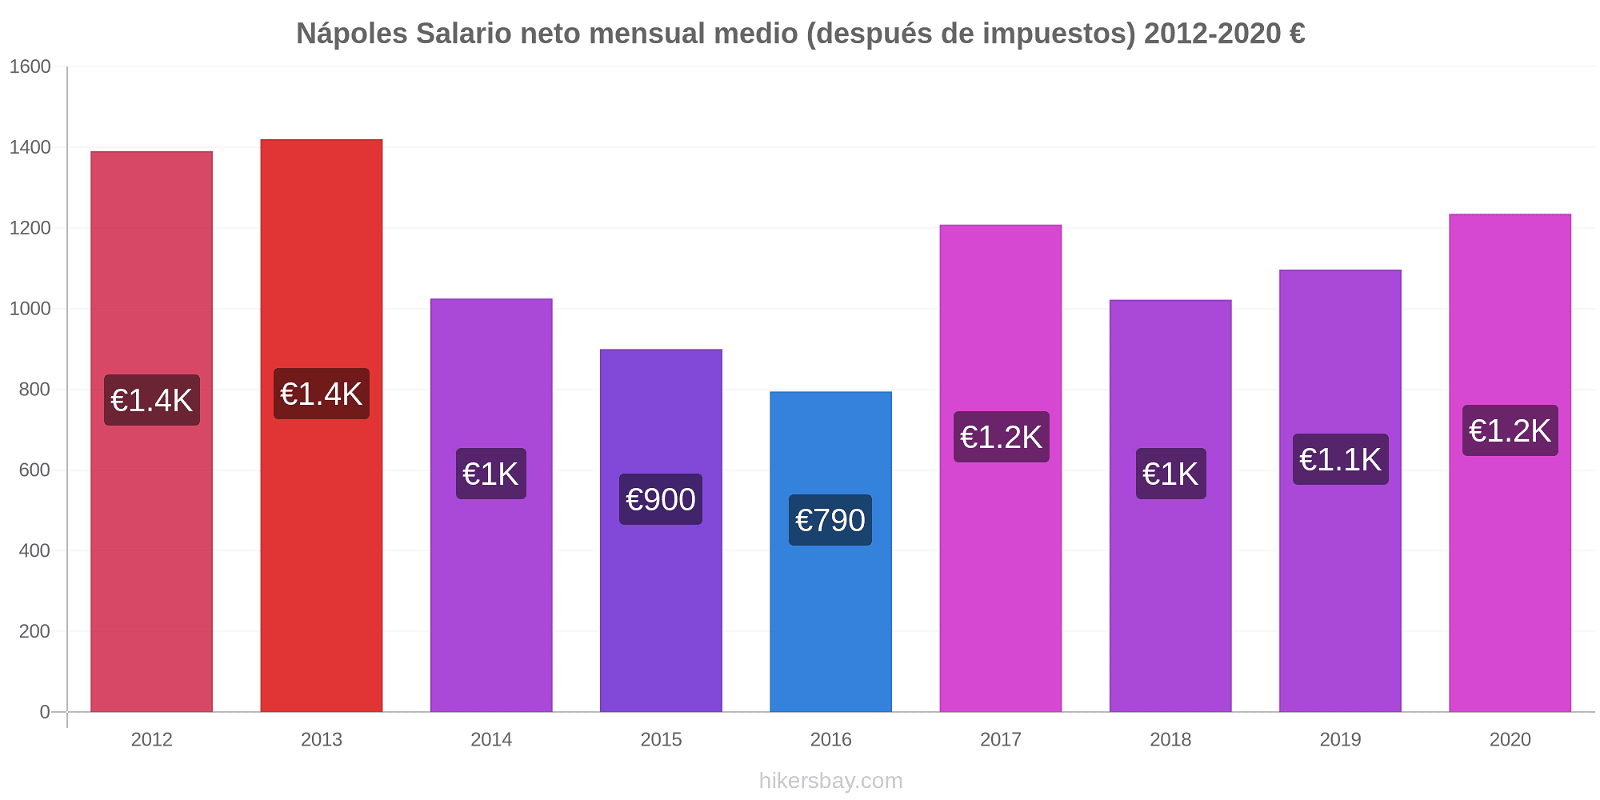 Nápoles cambios de precios Promedio mensual del salario neto (después de pagar impuestos) hikersbay.com